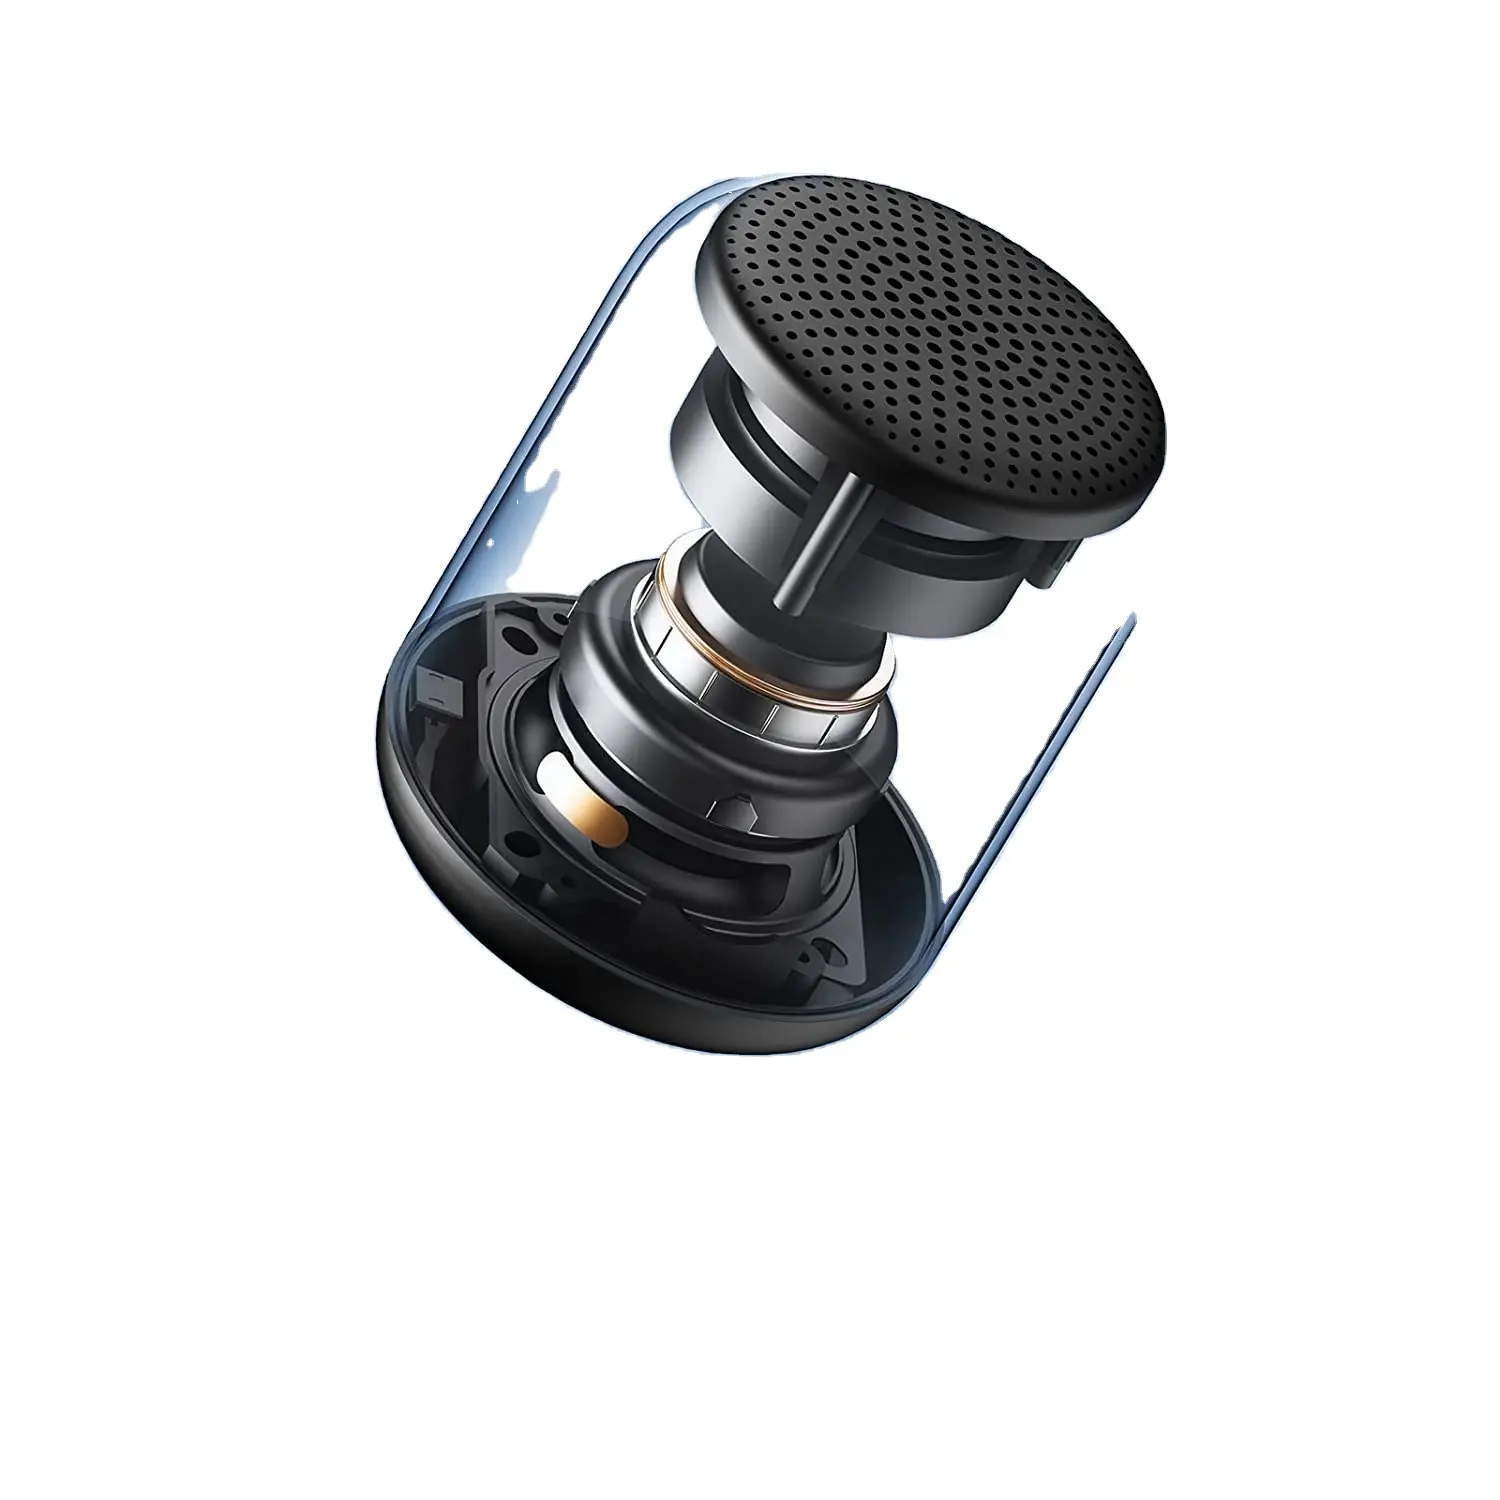 Vente chaude Sanag X6s Haut-parleurs portables Mini Hifi Sound Haut-parleur sans fil étanche